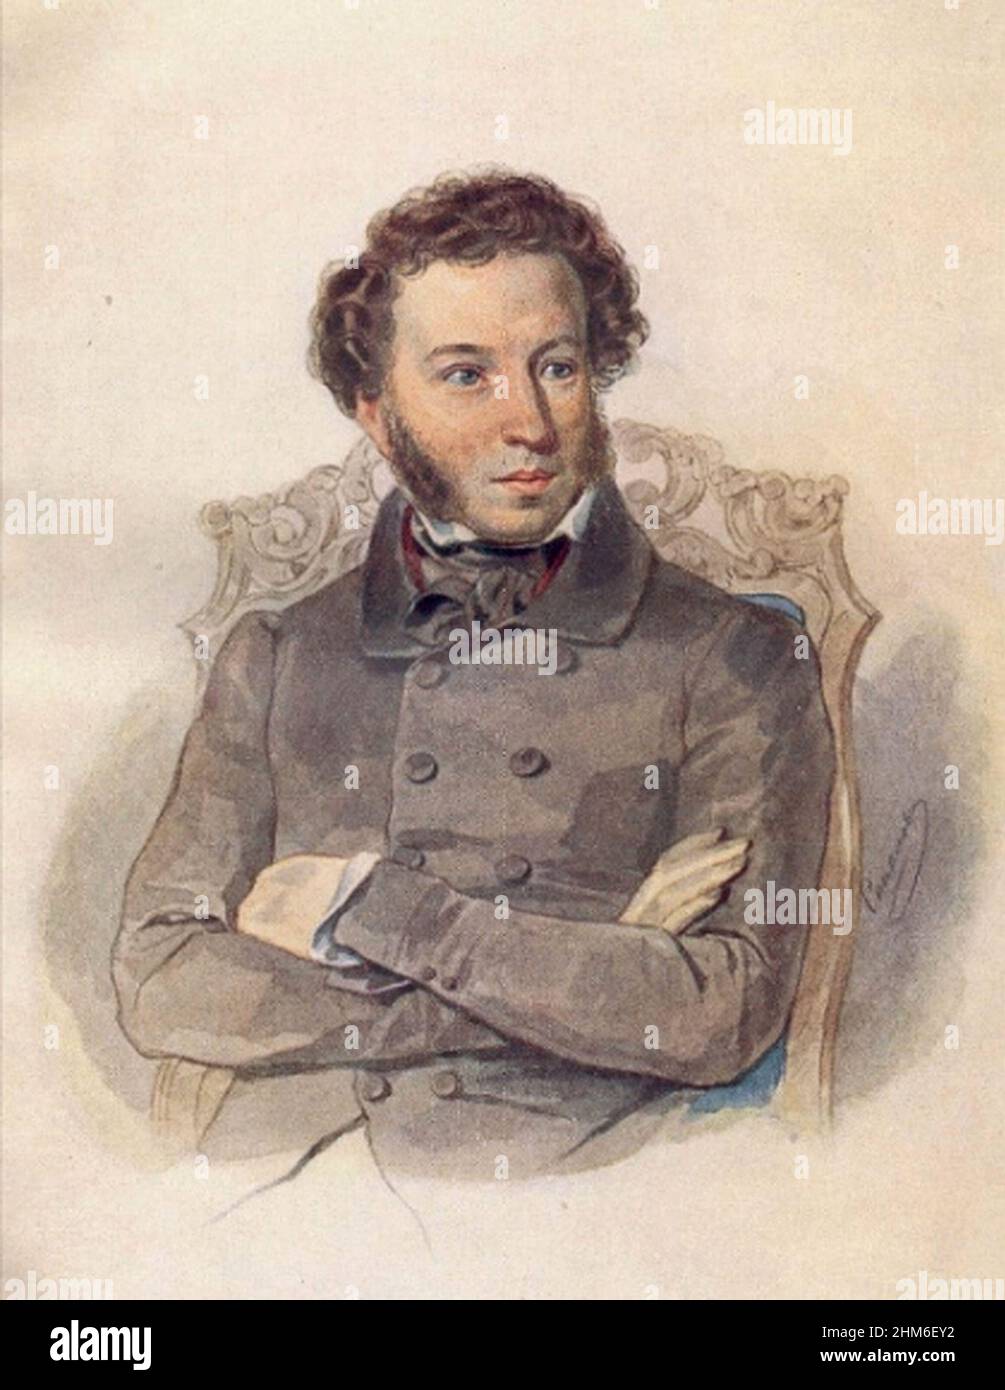 Un portrait de l'écrivain russe Alexander Pushkin, auteur d'Eugene Onegin, de 1836 quand il avait 37 ans. Banque D'Images